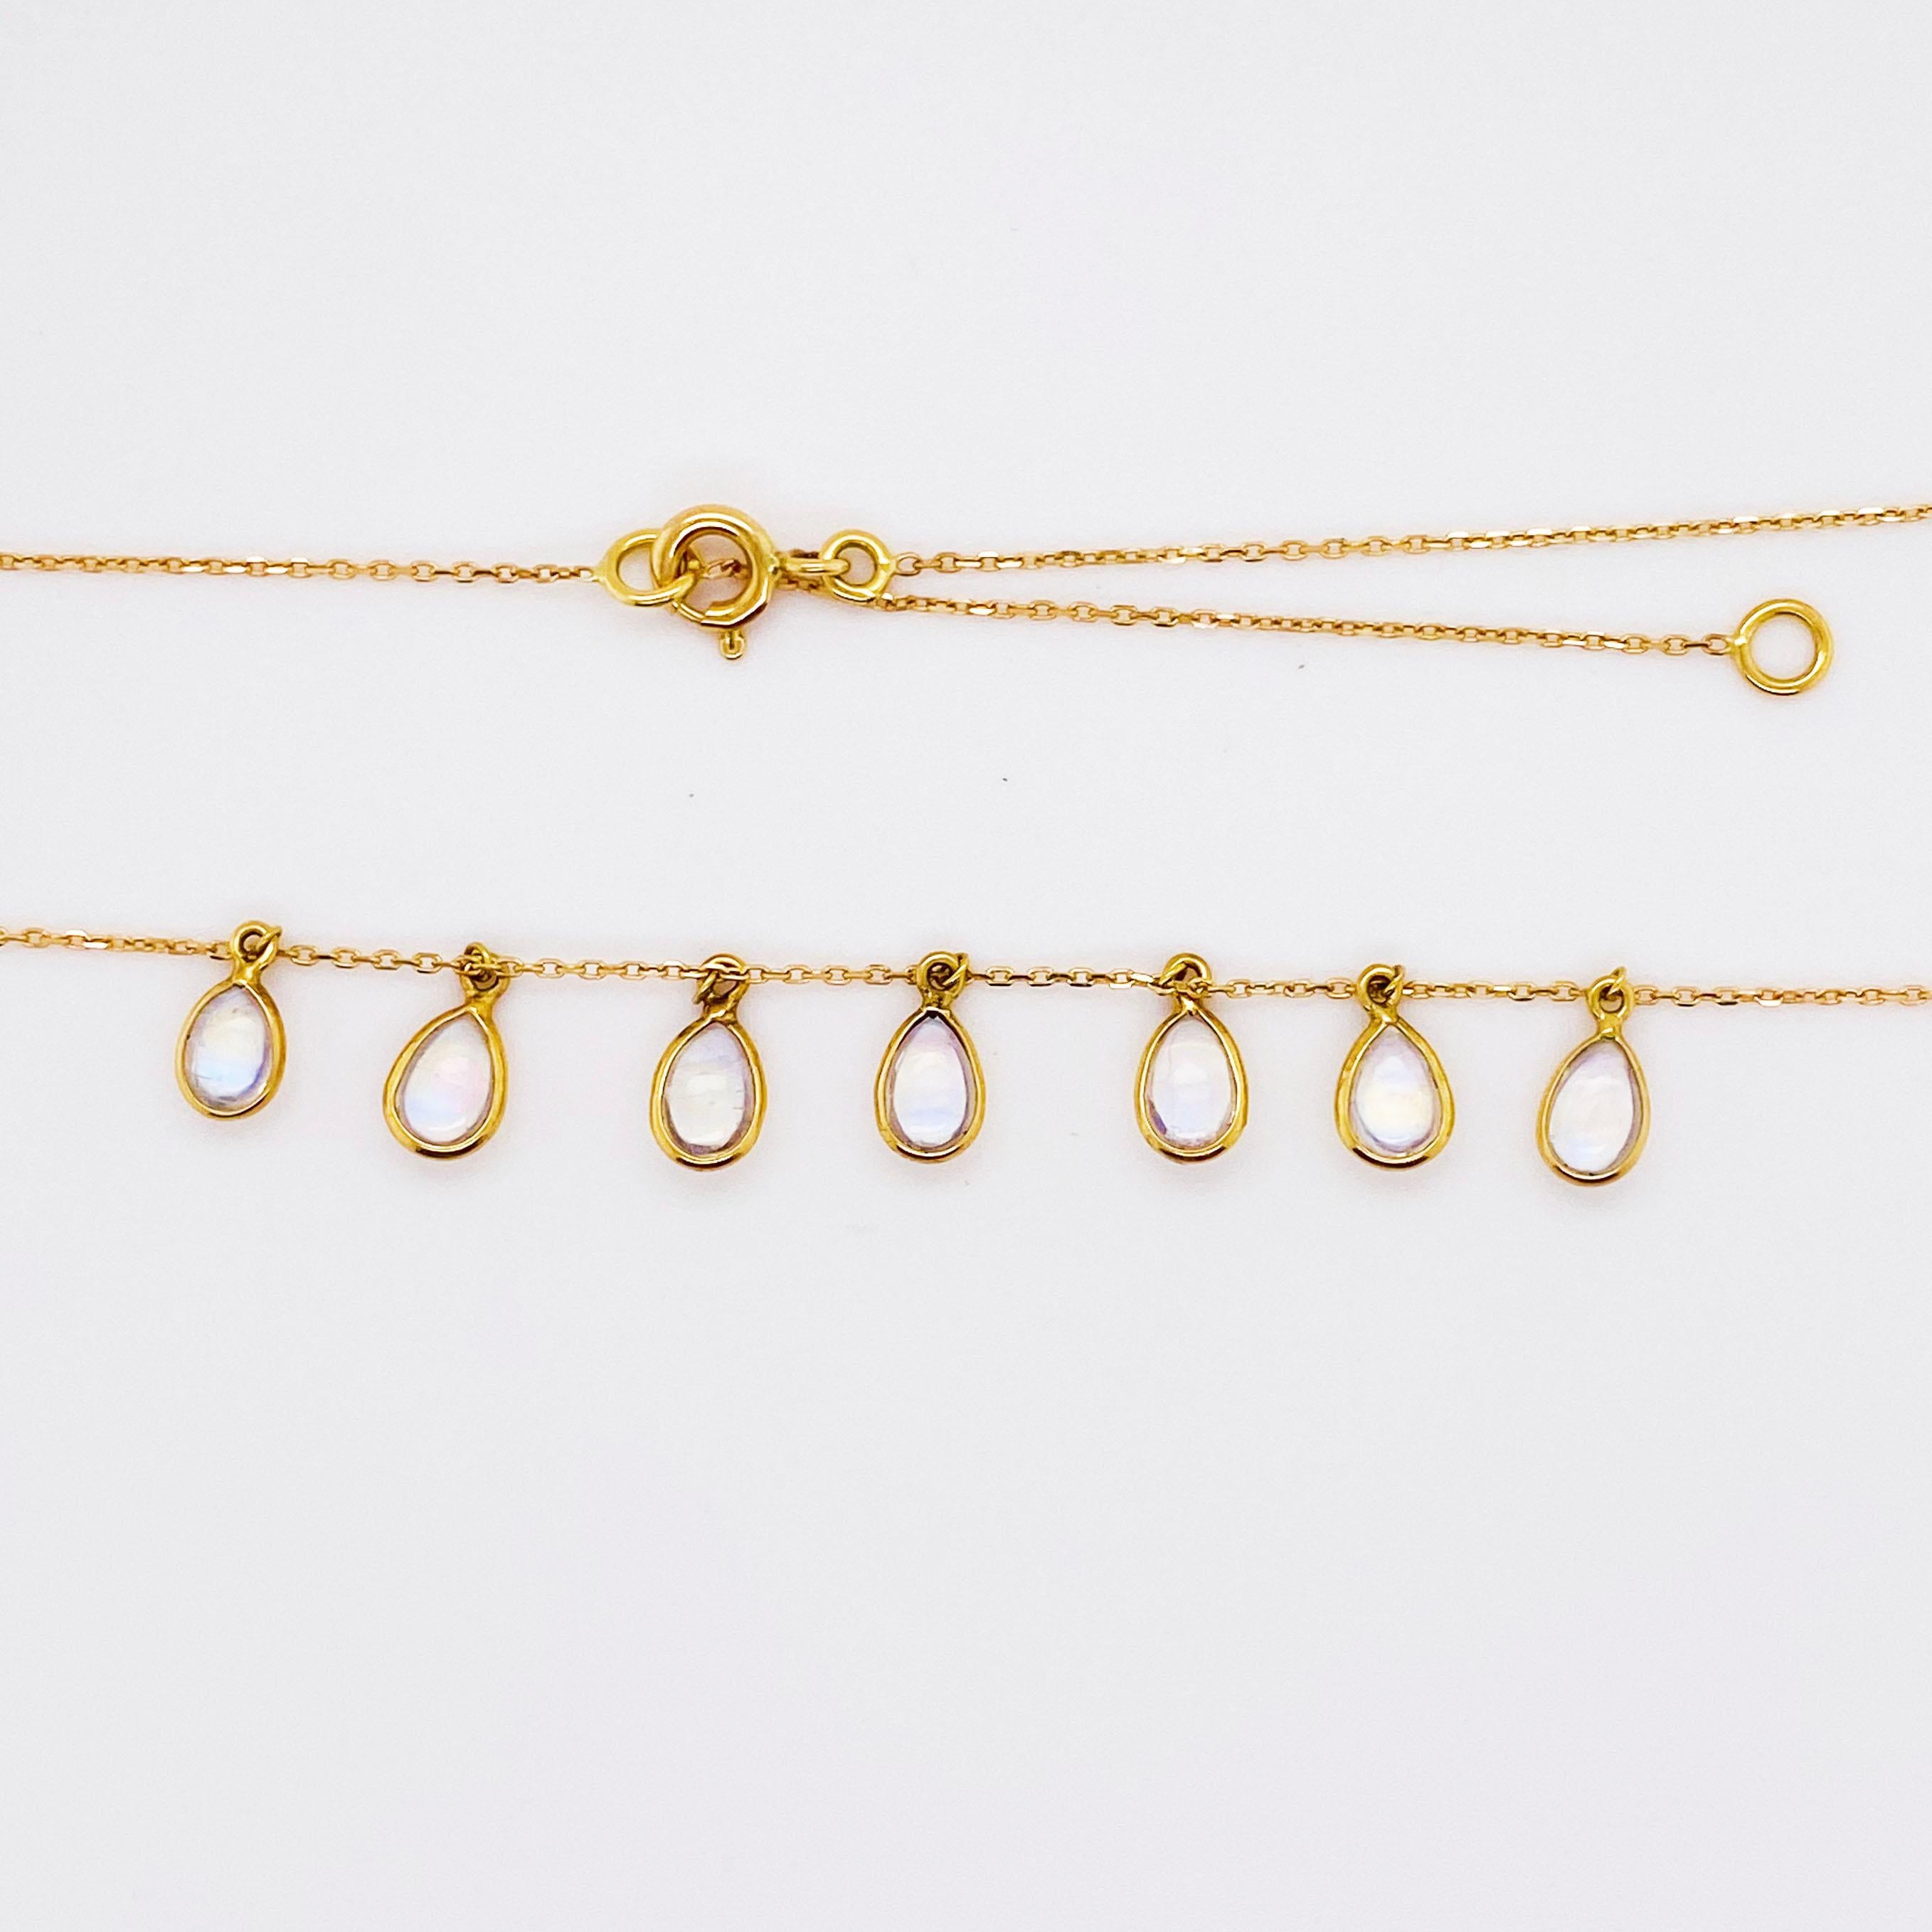 Regenbogen-Mondstein-Halskette in Birnenform mit sieben baumelnden Edelsteinen. Die Halskette ist auf zwei verschiedene Längen einstellbar: eine auf 18 Zoll und die andere auf 15 Zoll.  Diese Halskette macht viel Spaß und eignet sich perfekt als